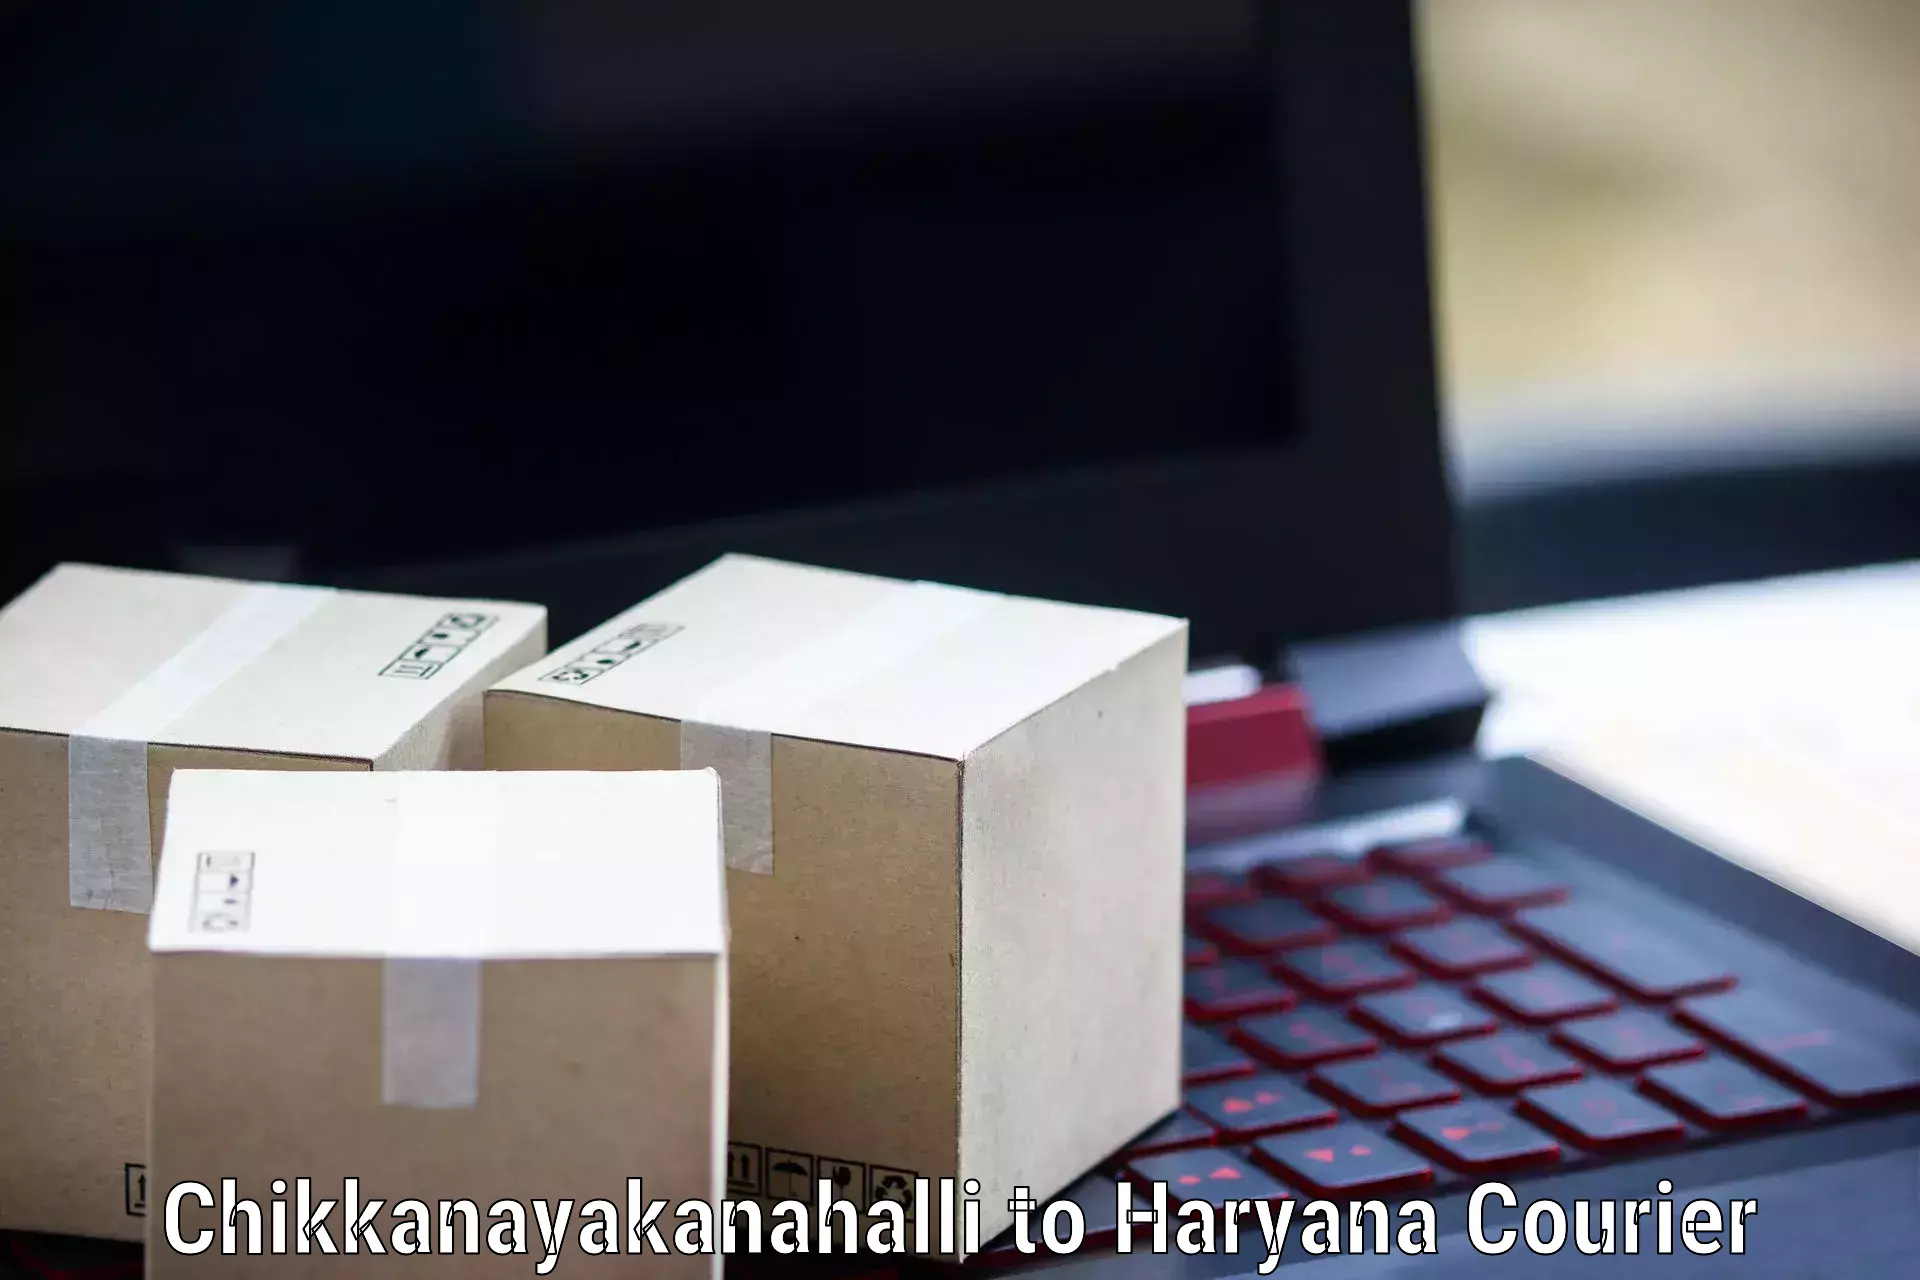 Large package courier Chikkanayakanahalli to Jhajjar